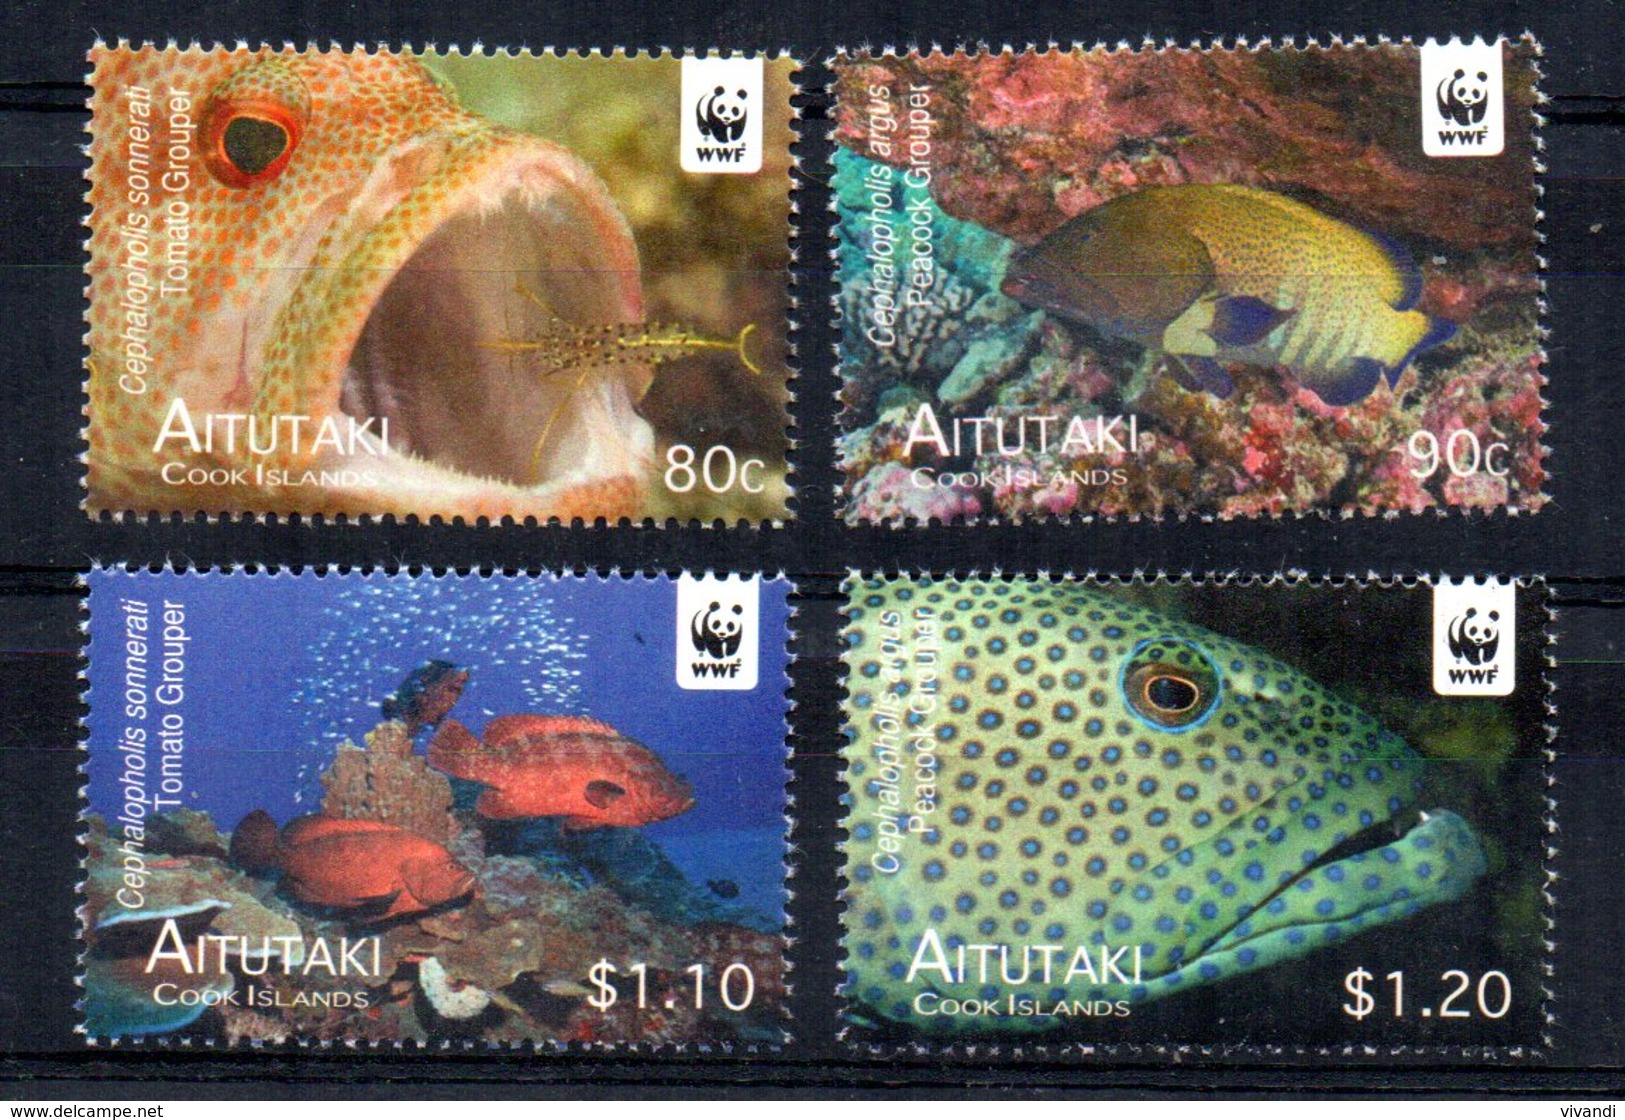 Aitutaki - 2010 - Endangered Species/Groupers - MNH - Aitutaki